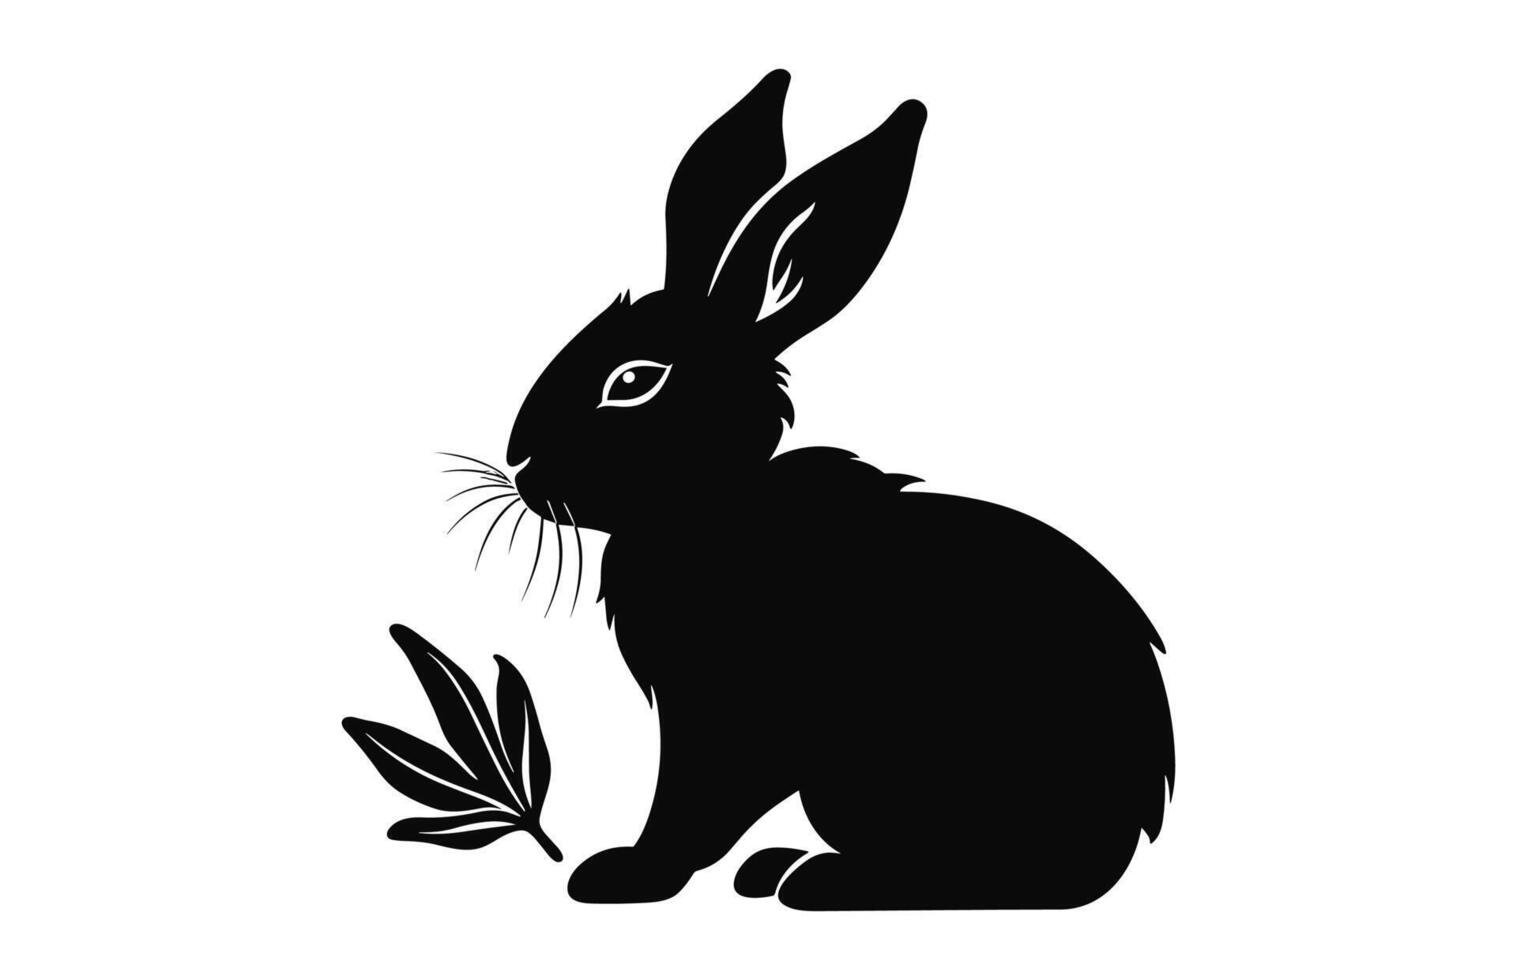 påsk kanin äter silhuett vektor isolerat på en vit bakgrund